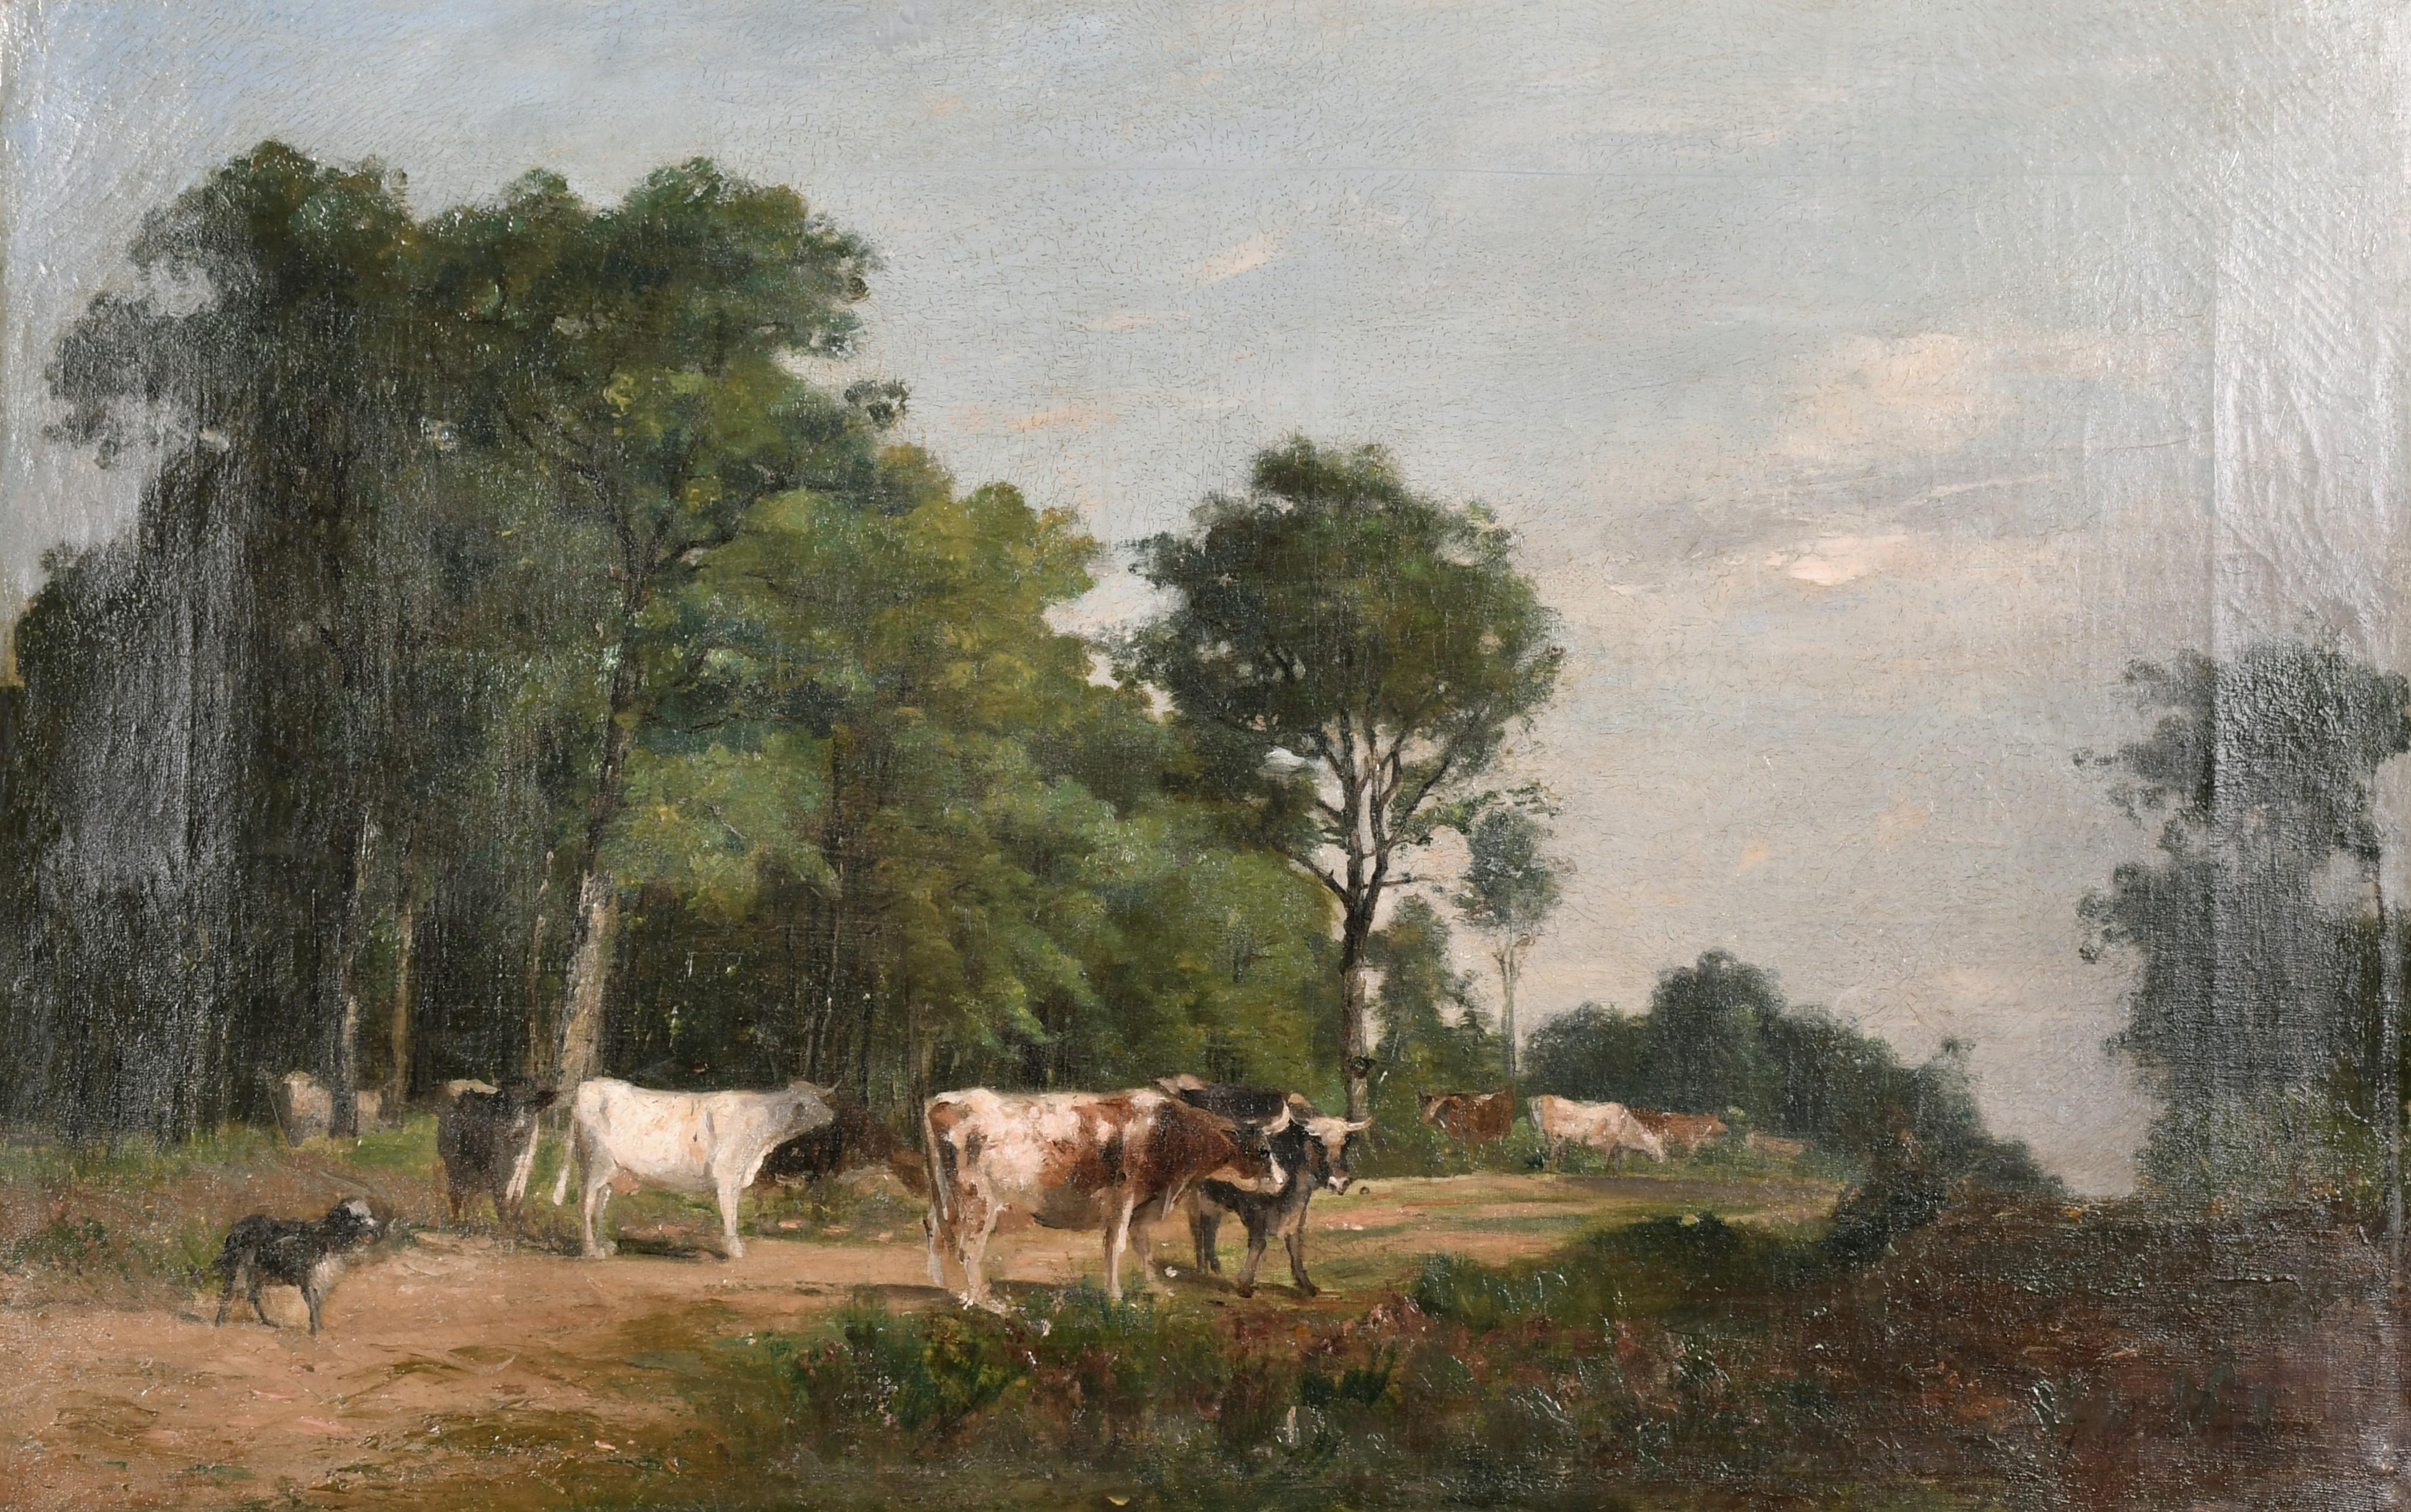 Peinture à l'huile française du 19ème siècle signée de Barbizon représentant du bétail et un chien dans une colline rurale